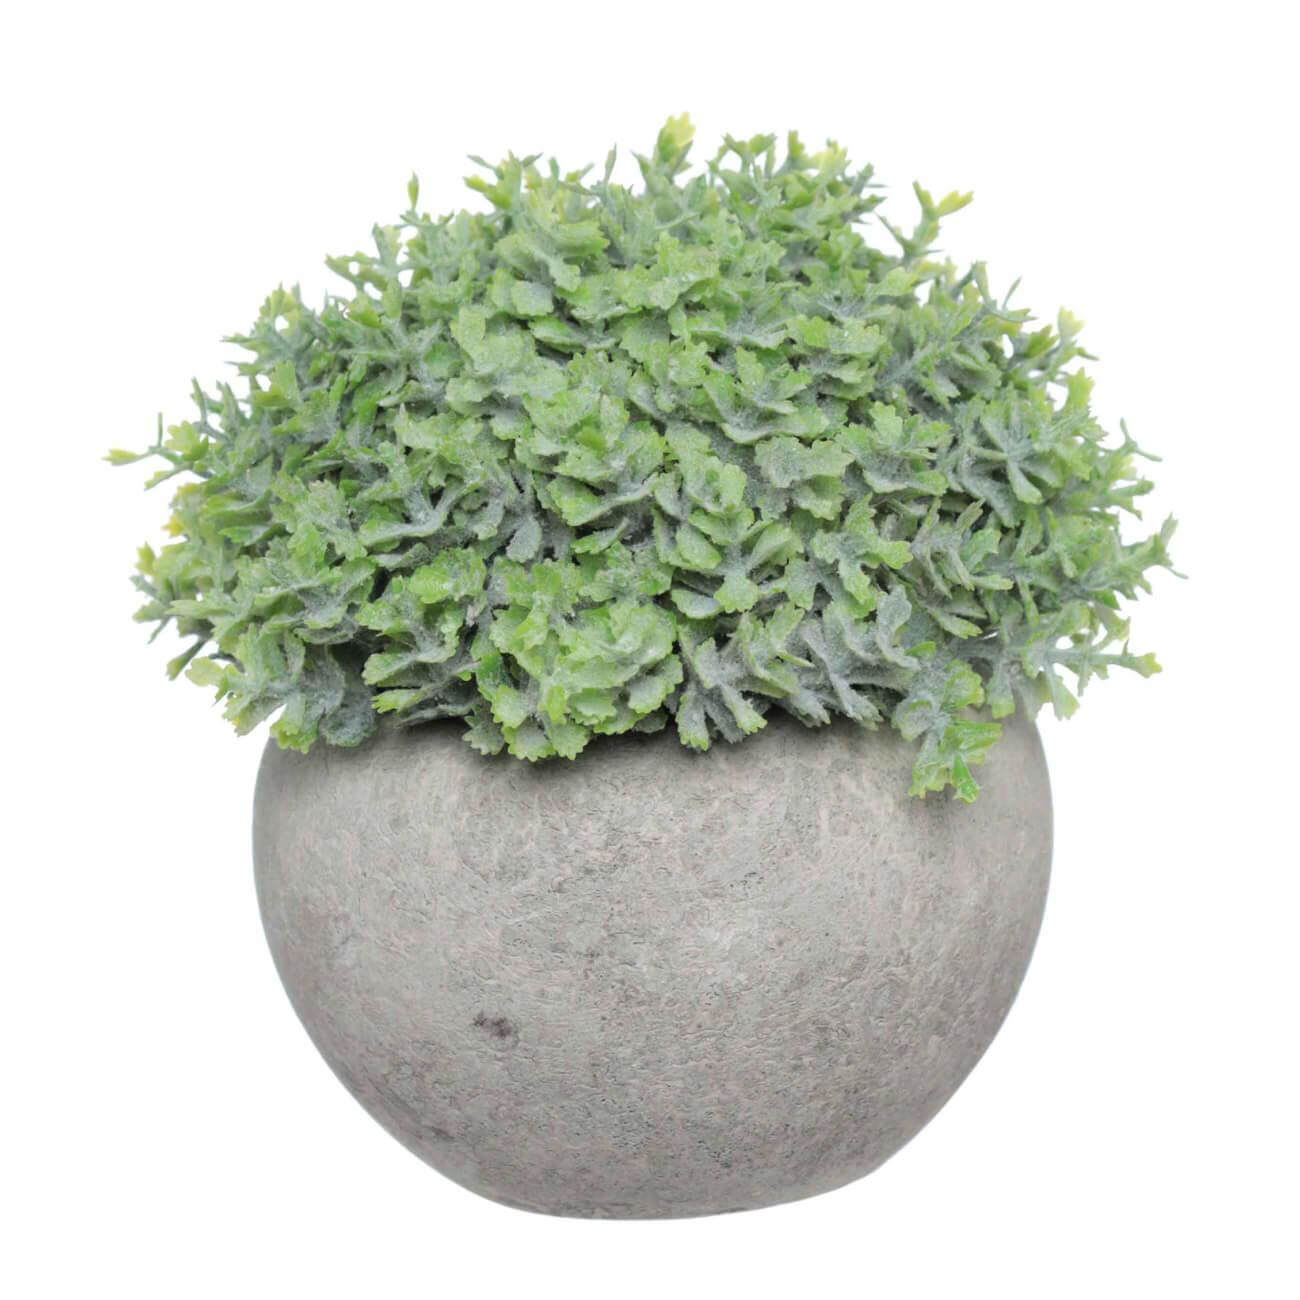 Растение искусственное, 16 см, в горшке, цемент/пластик, Pot garden растение искусственное аквариумное 4 х 6 х 16 см